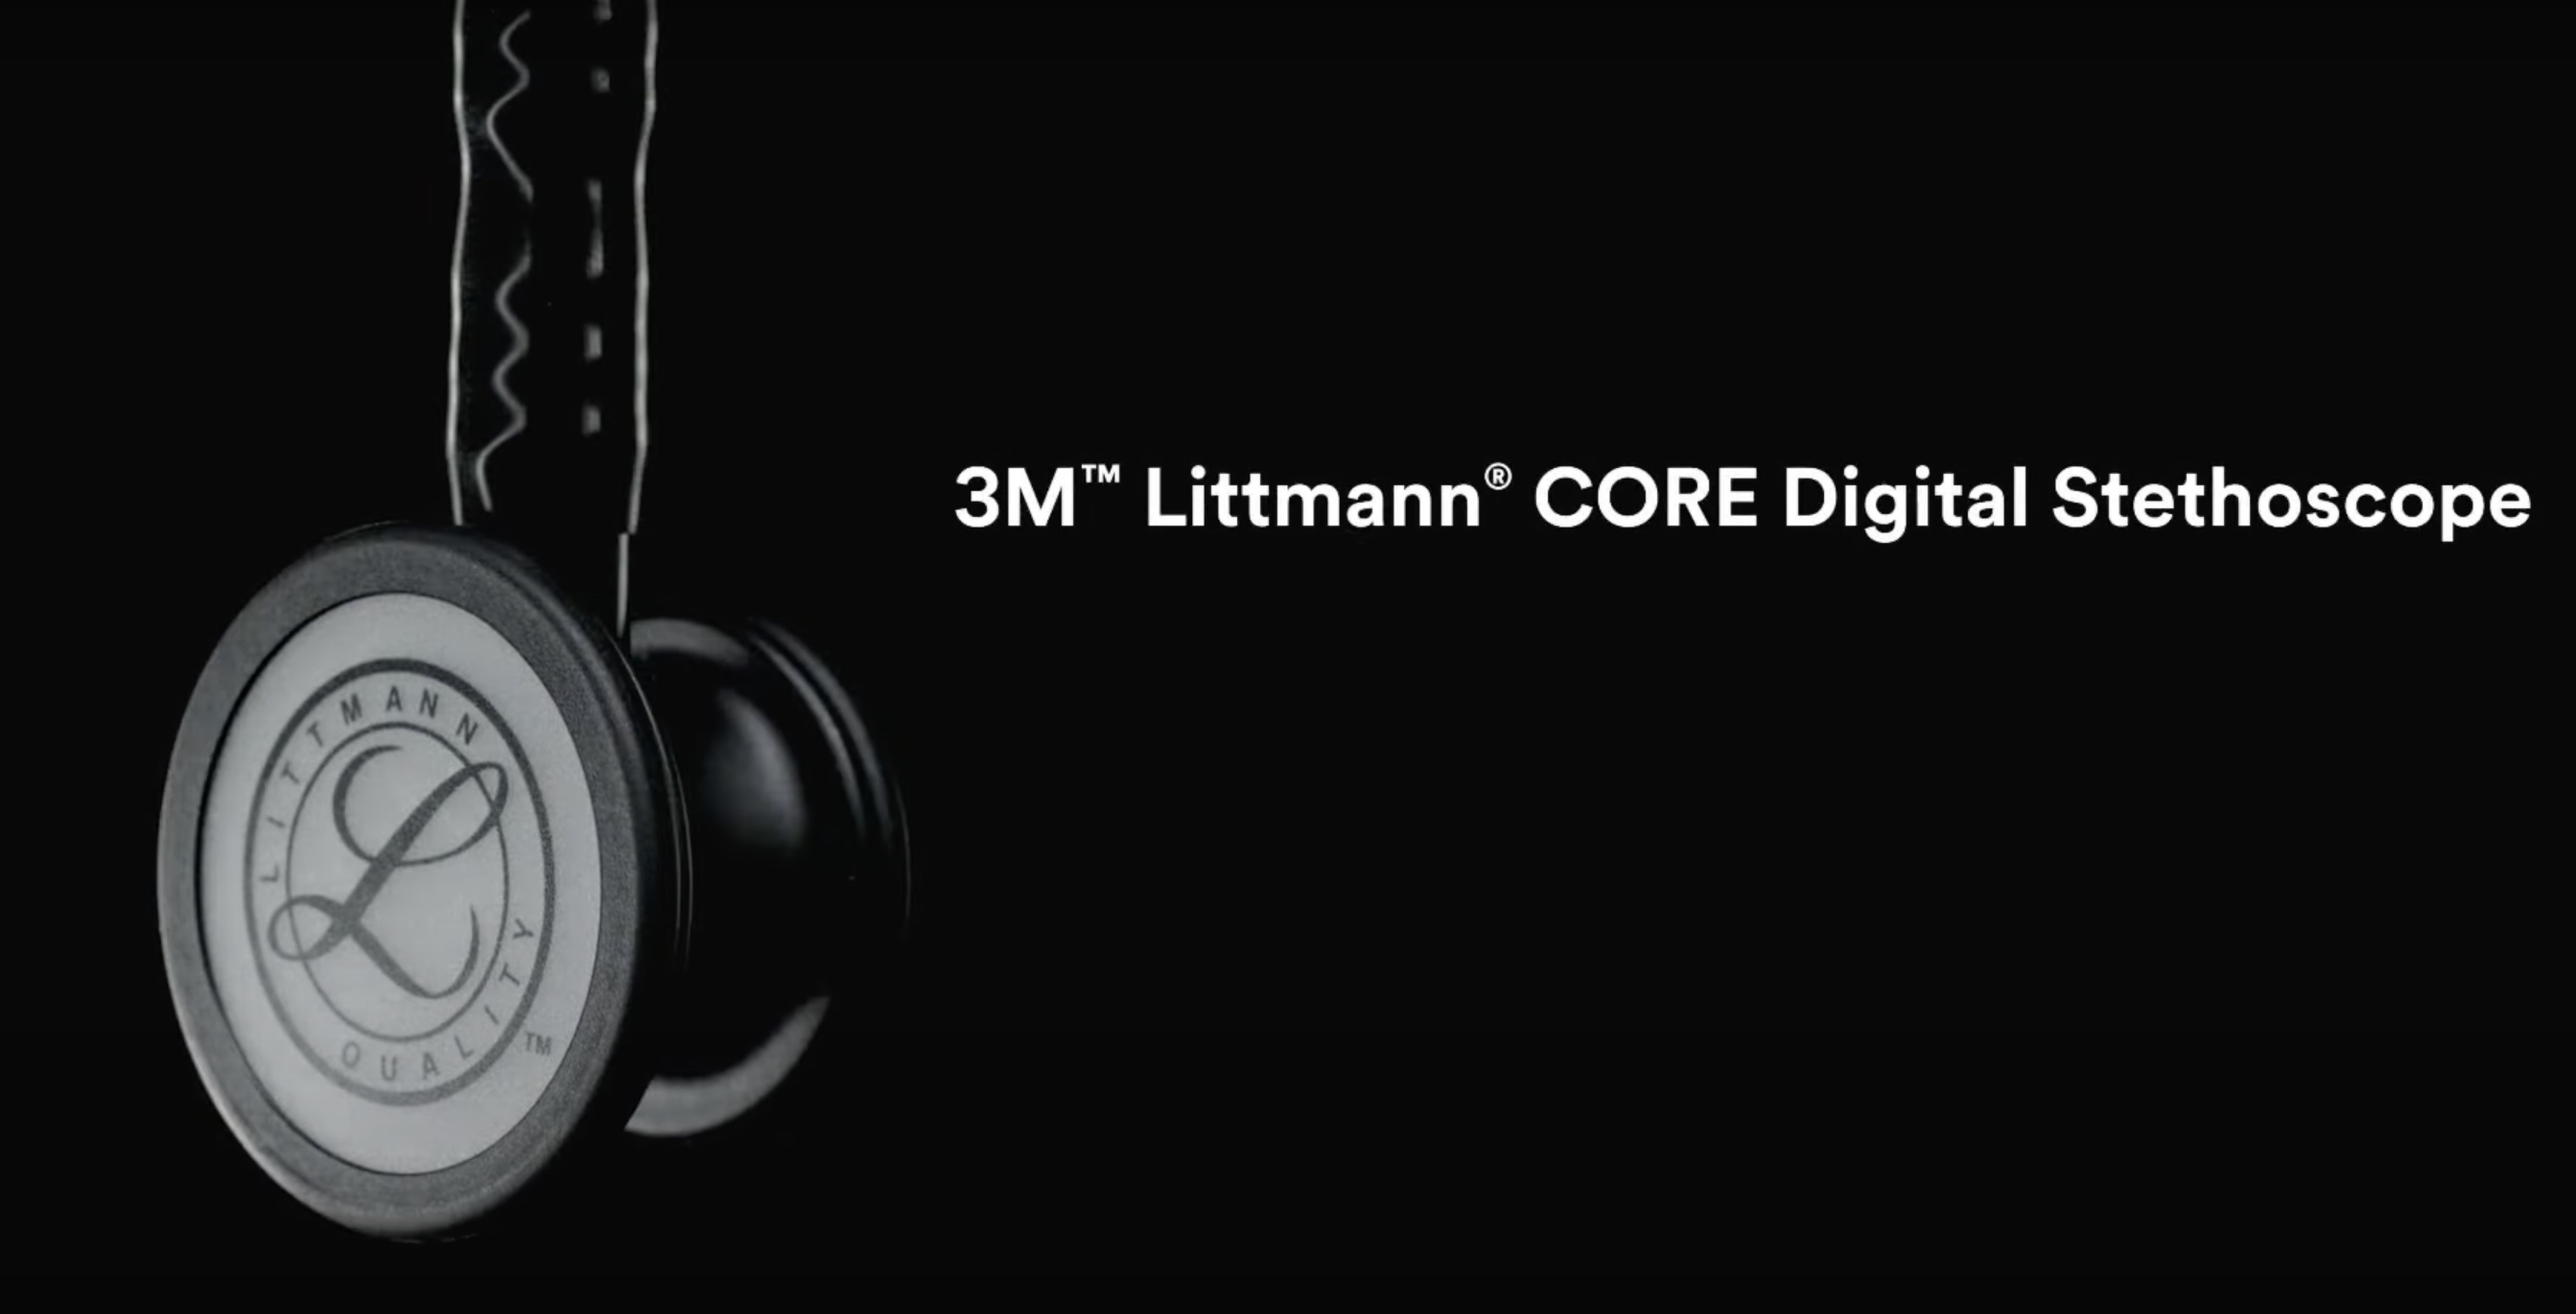 Představujeme stetoskop Littmann® CORE Digital Stethoscope: První stetoskop s aktivním potlačením hluku a propojením se smartphonem